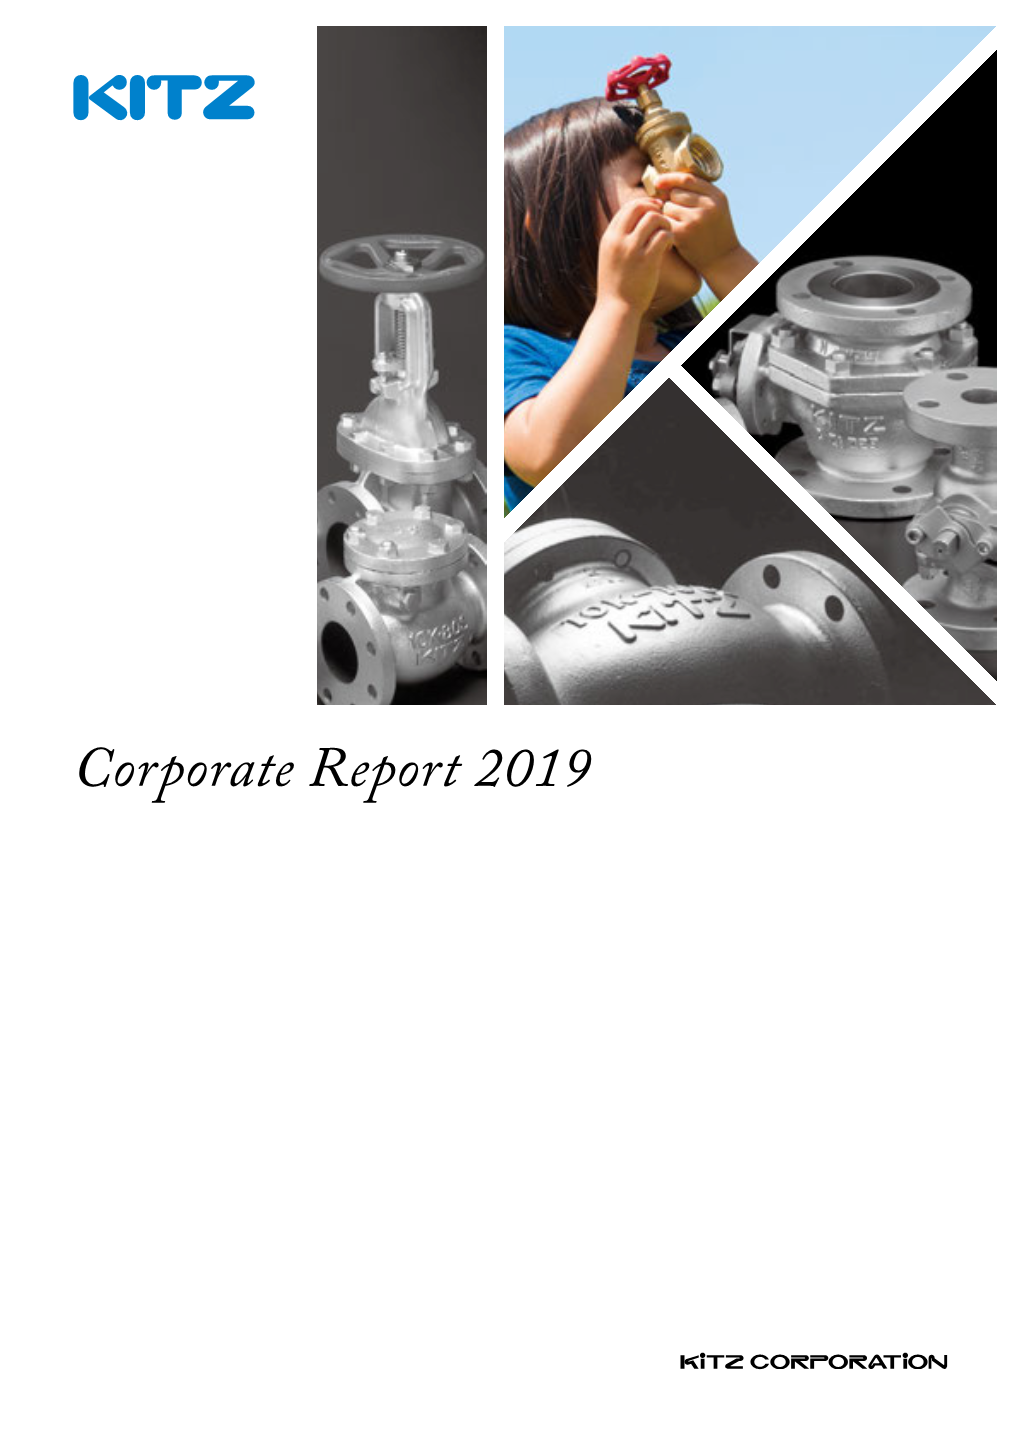 Corporate Report 2019 Unique Stories